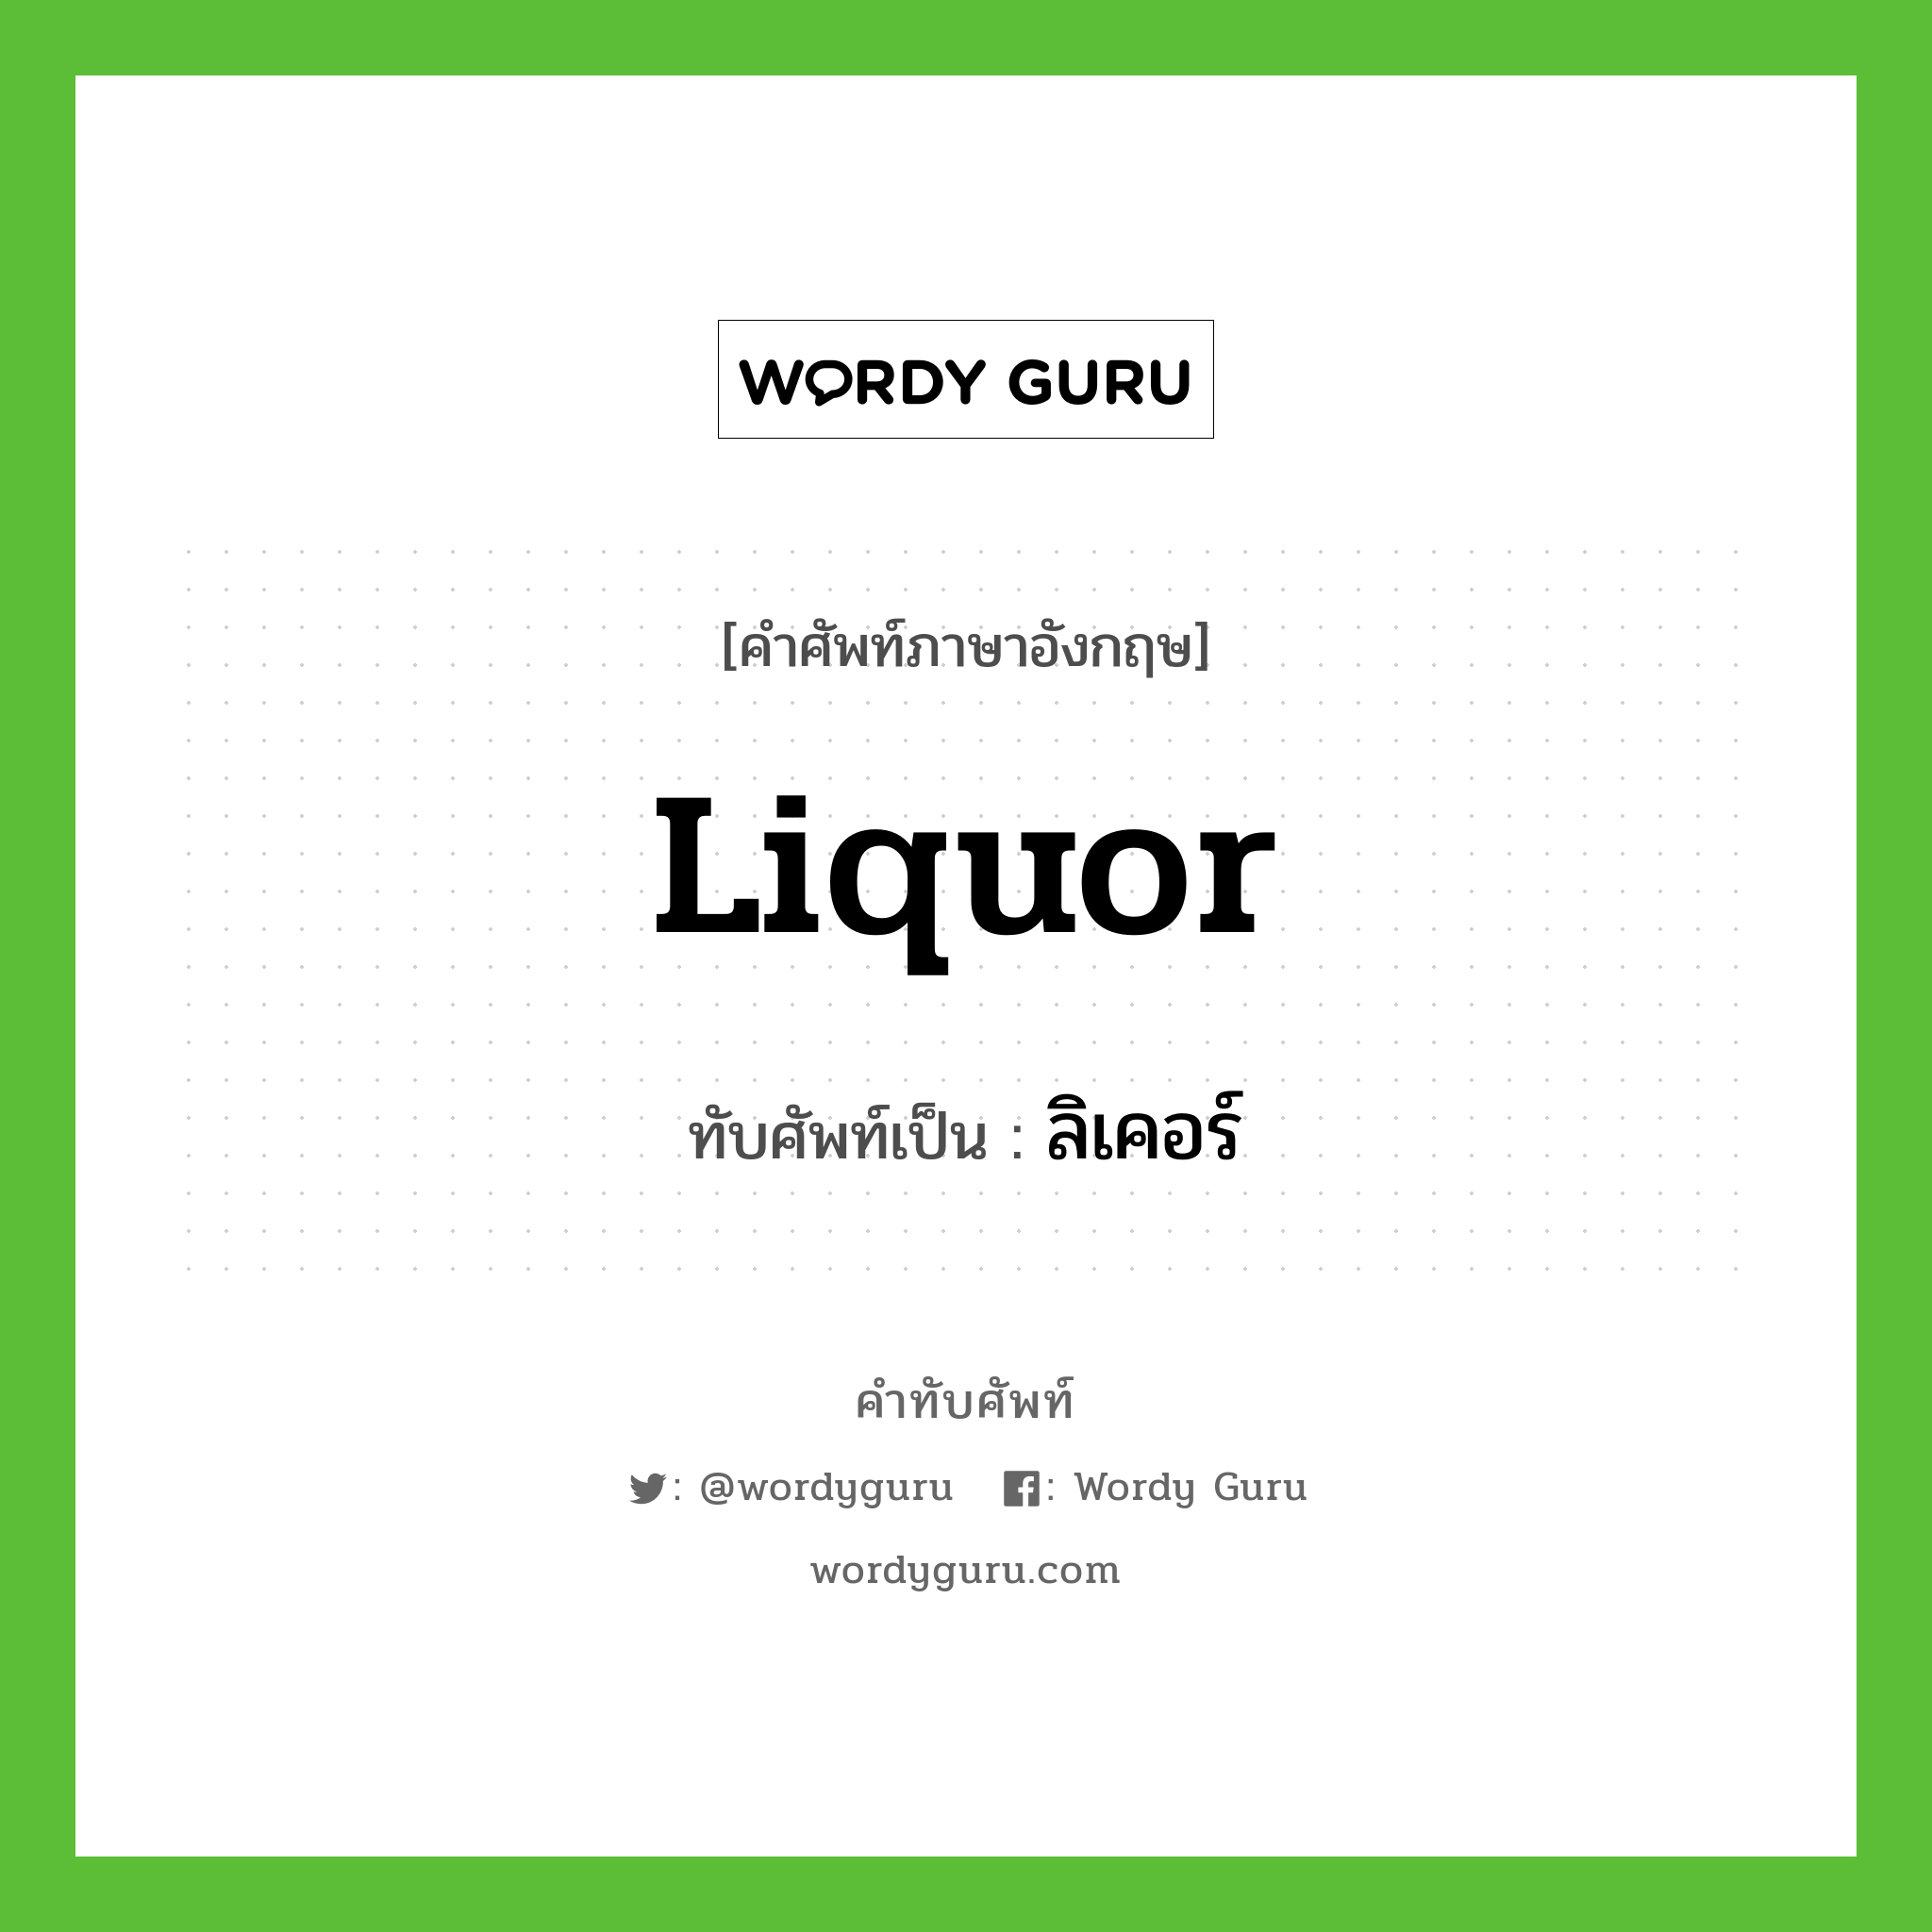 liquor เขียนเป็นคำไทยว่าอะไร?, คำศัพท์ภาษาอังกฤษ liquor ทับศัพท์เป็น ลิเคอร์